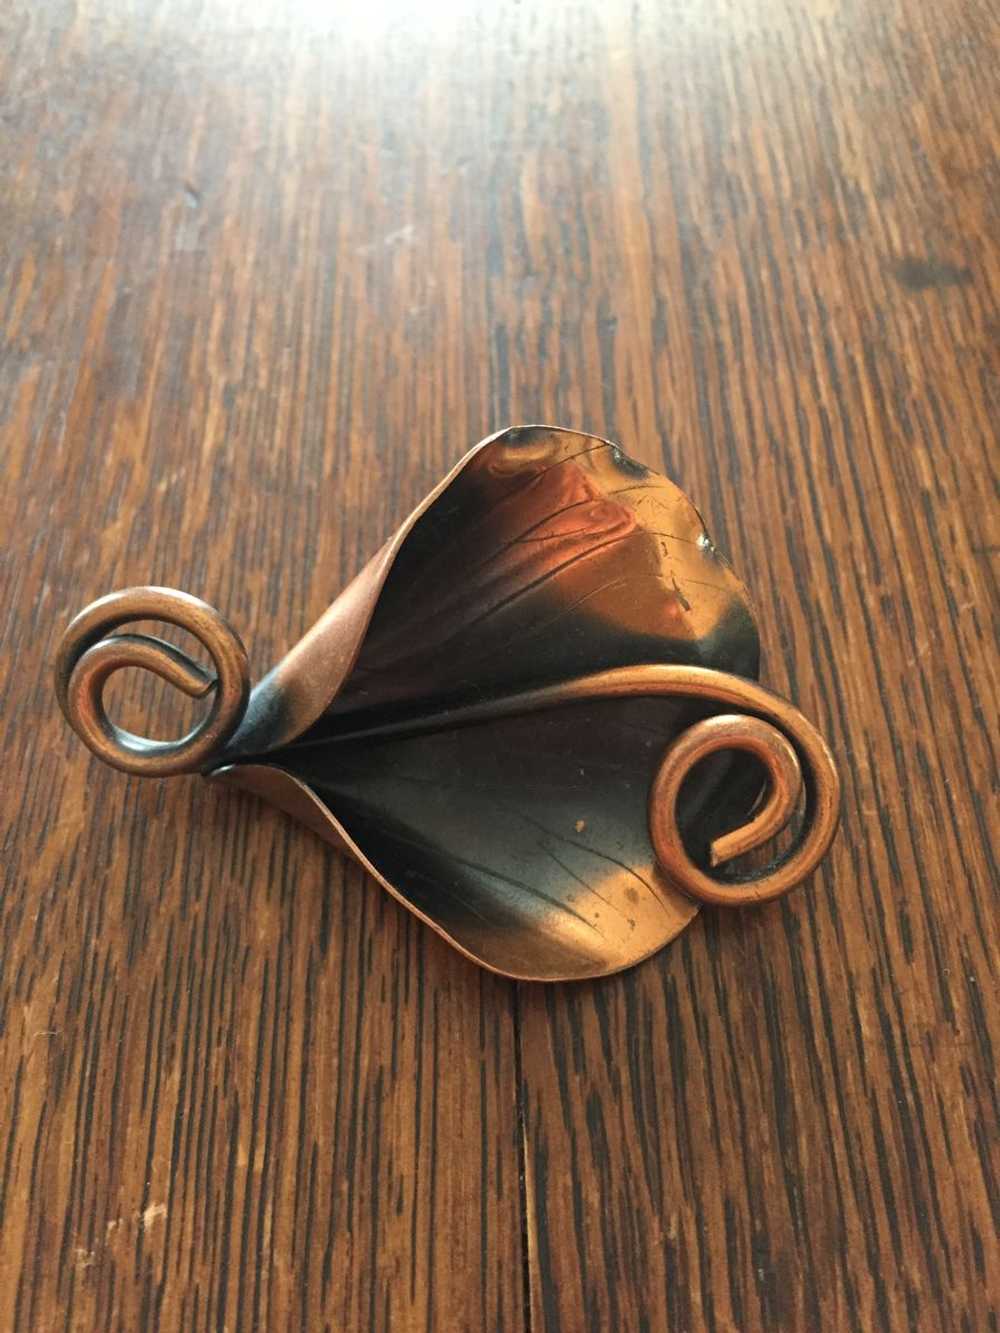 Copper Calla Lily Brooch - image 2